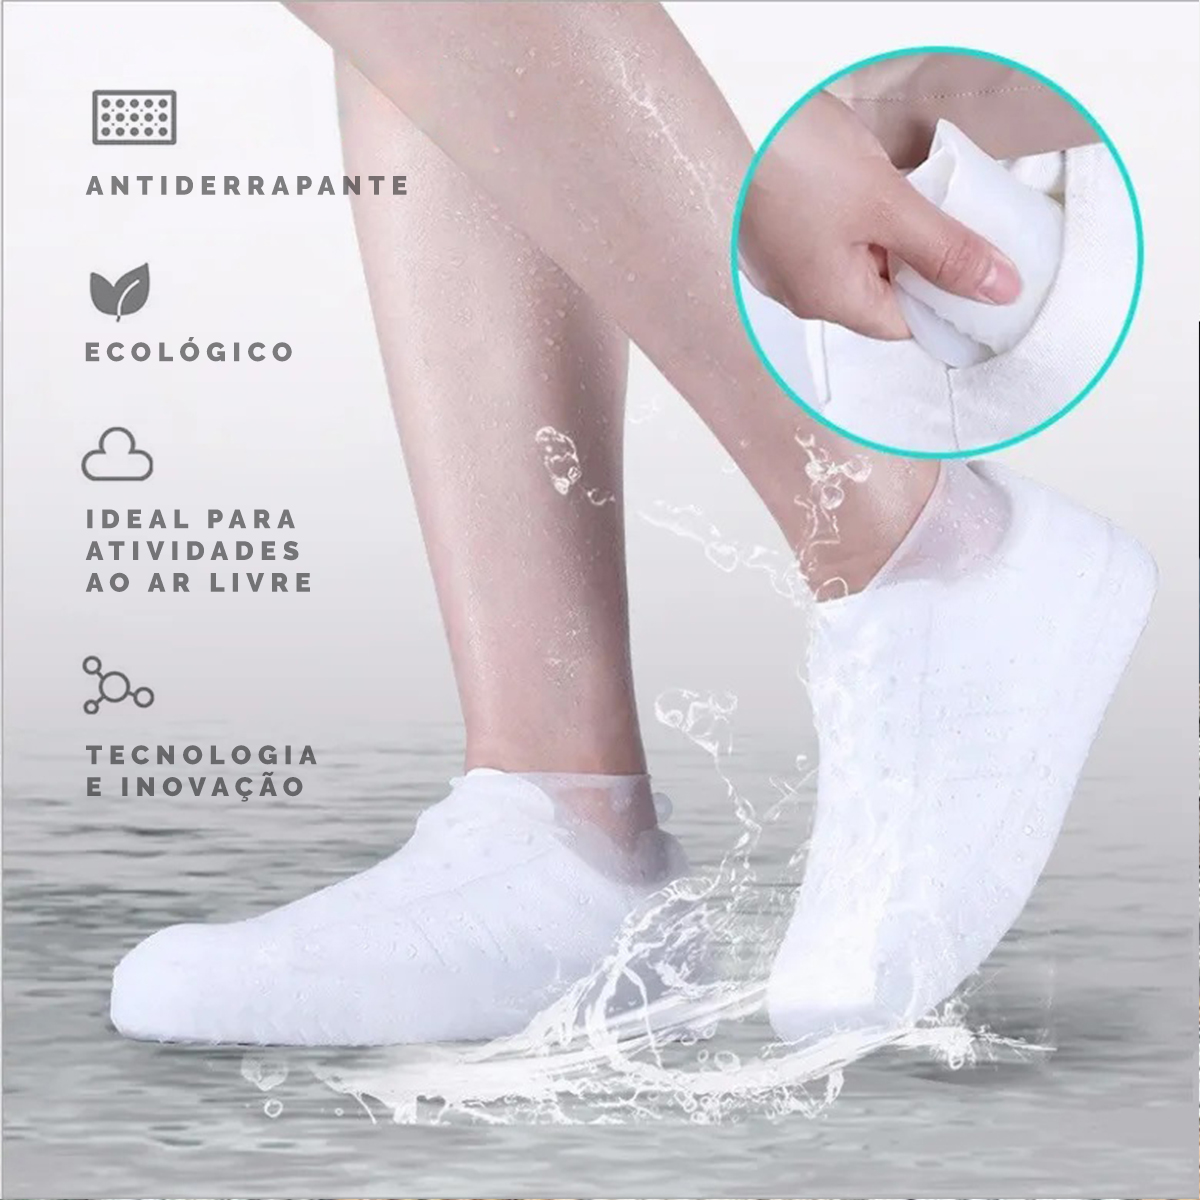 proteção para calçados à prova d'água, para pessoas que gostam de atividades ao ar livre em dias de chuva, antiderrapante, ecológico, produto tecnológico